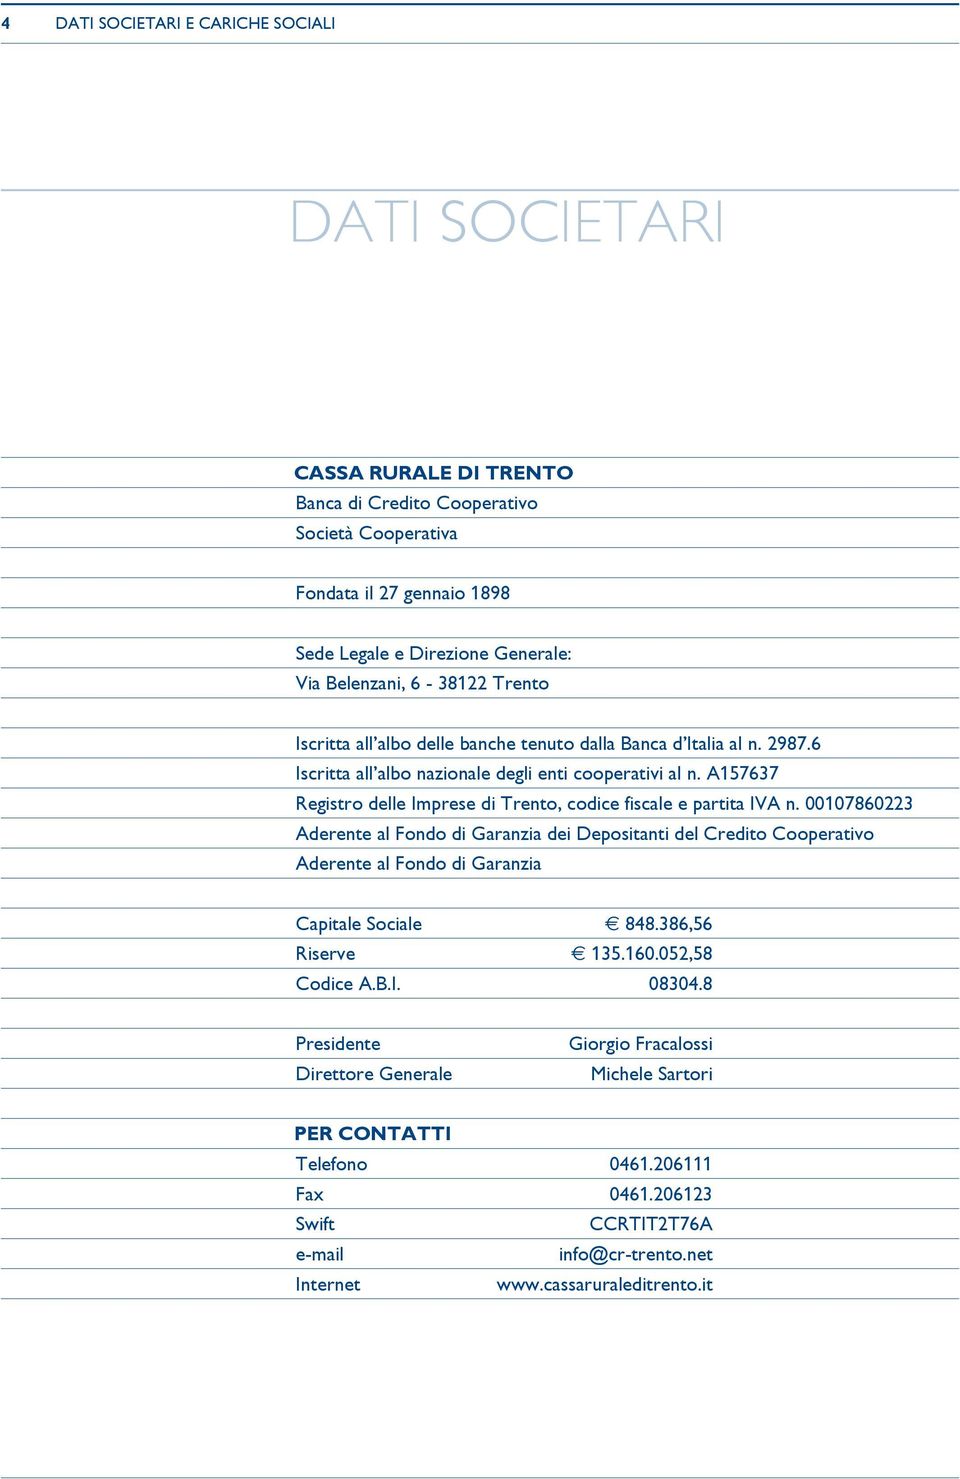 A157637 Registro delle Imprese di Trento, codice fiscale e partita IVA n.